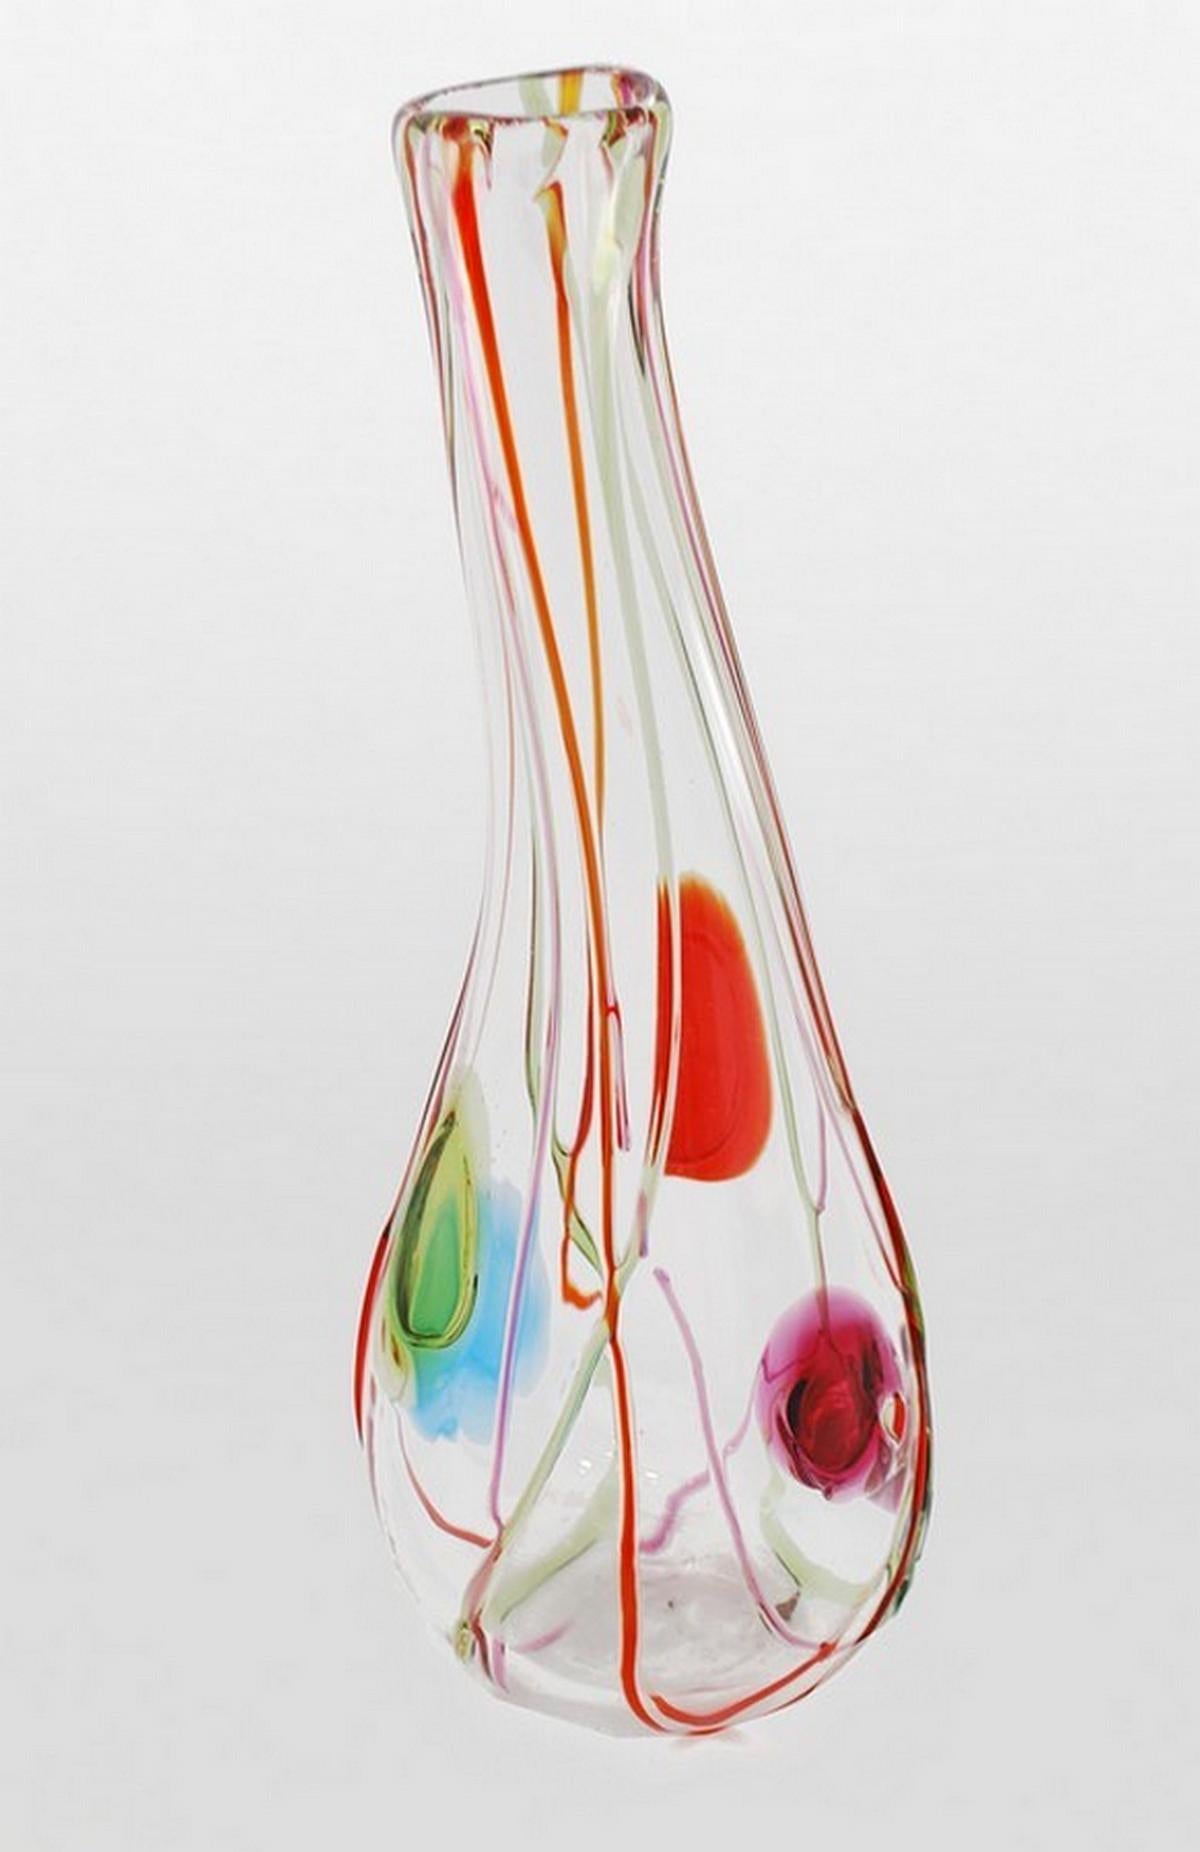 Künstler/Designer: Salviati

Zusätzliche Informationen: Salviati ist ein weltbekannter Hersteller von Glas aus Murano seit 1859.

Markierung(en); Anmerkungen: Salviati Label

Herkunftsland; MATERIALIEN: Italien; Glas

Abmessungen: 20″h,